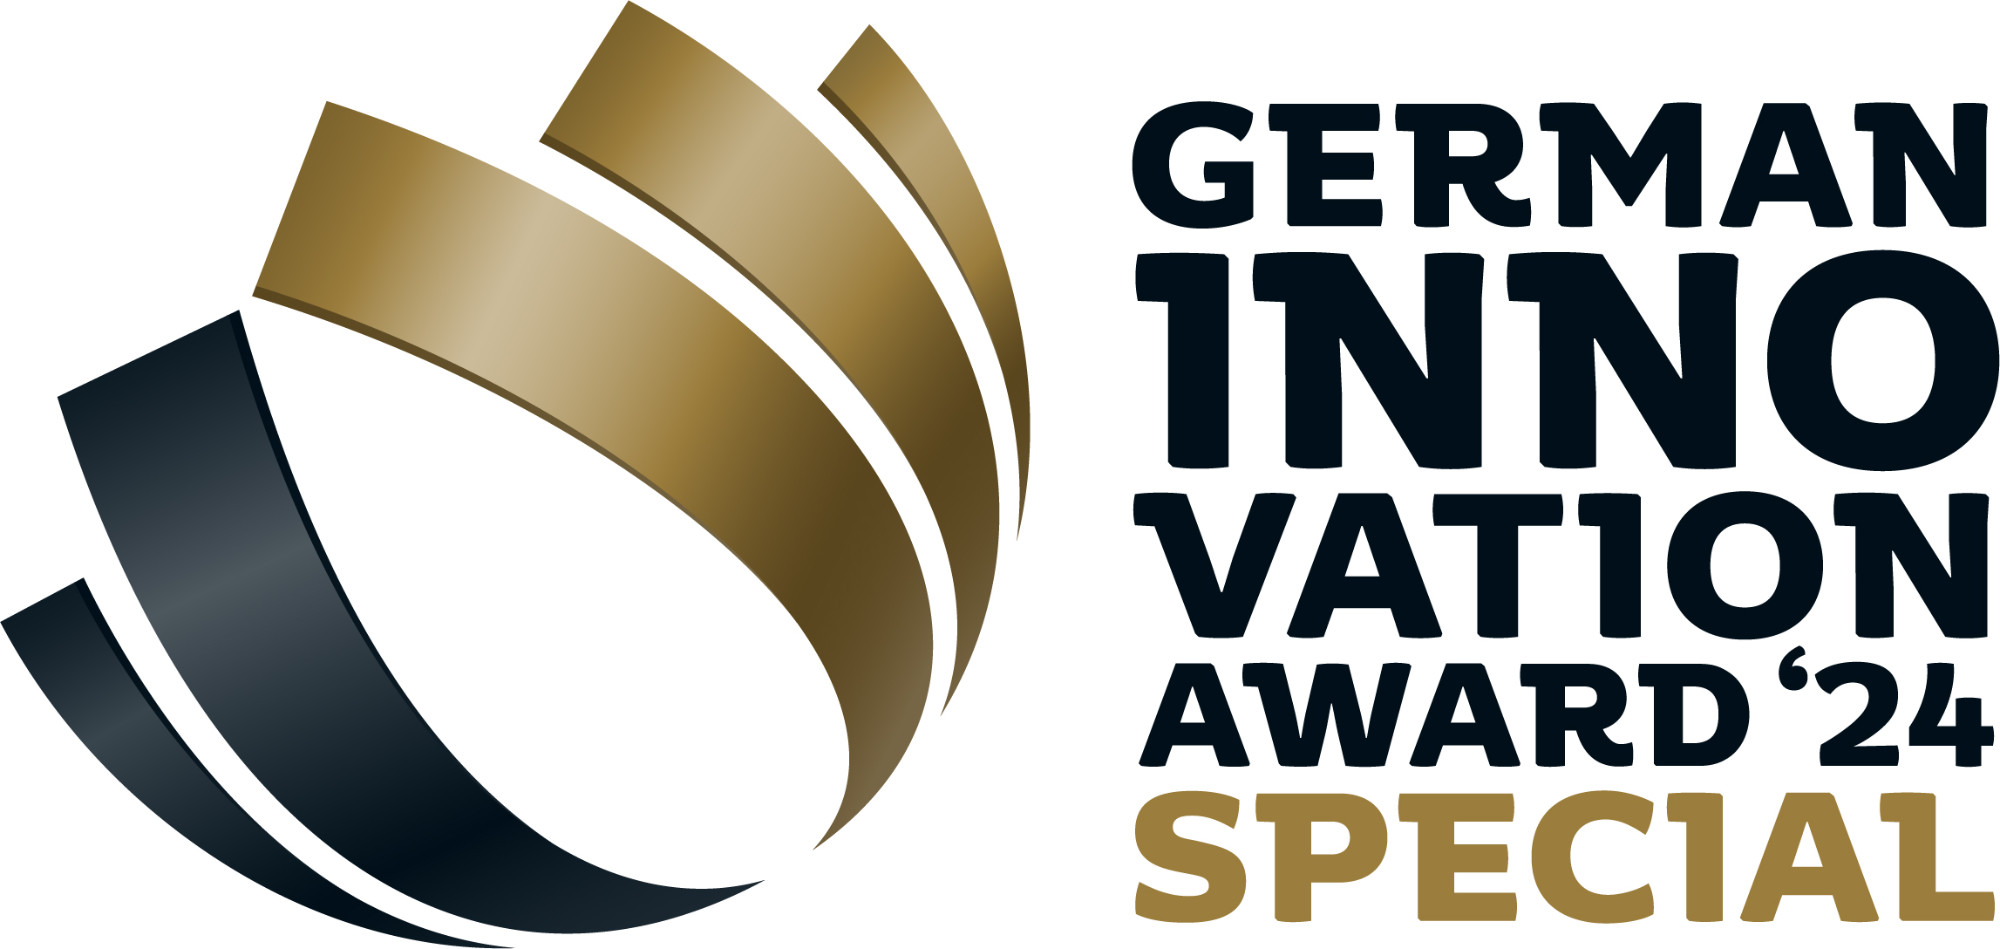 German Innovation Award Special